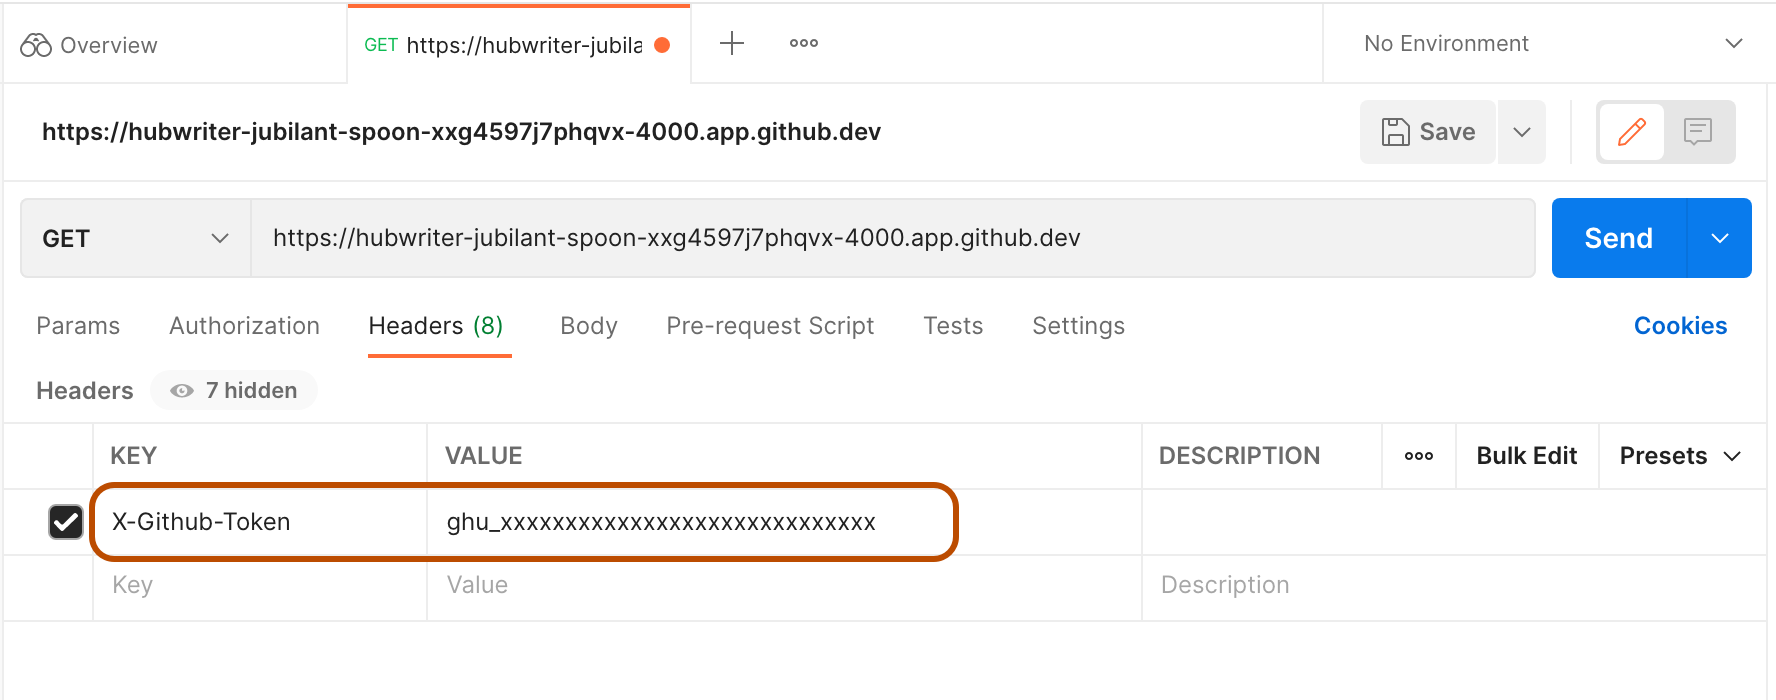 Captura de pantalla de un GITHUB_TOKEN ficticio pegado en Postman como el valor de la clave X-GitHub-Token. La clave y el valor están resaltados.